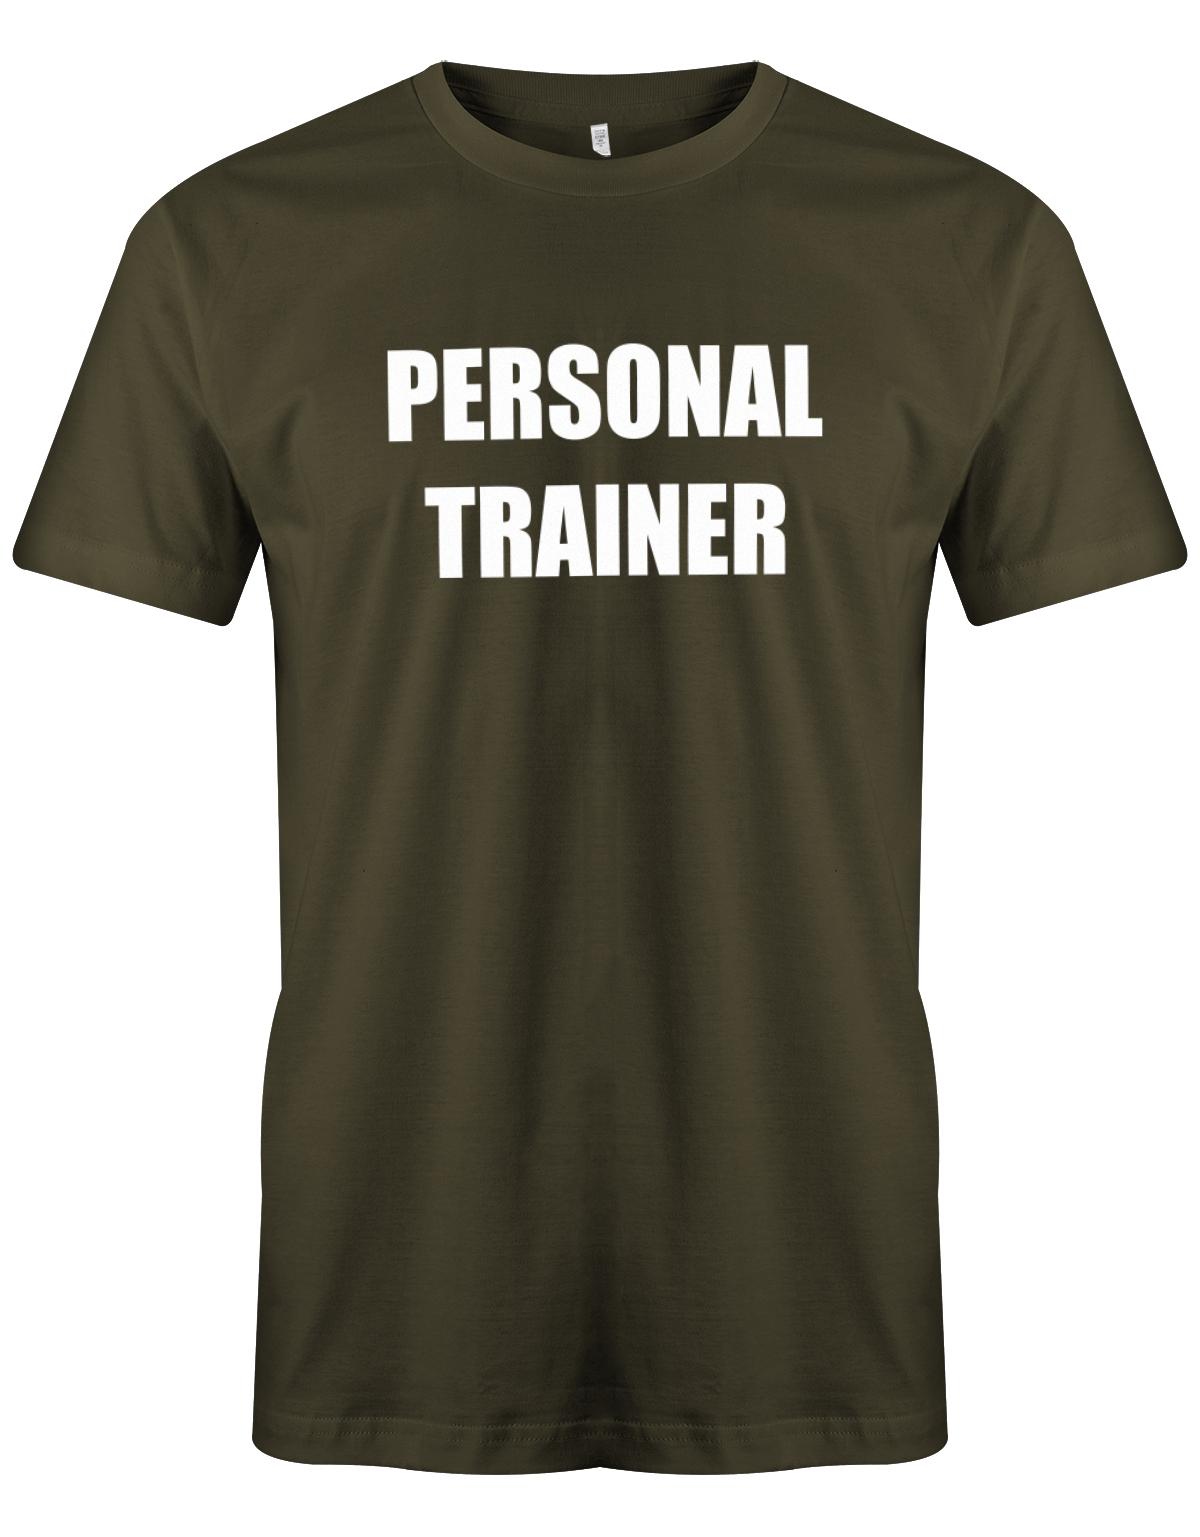 Personal-Trainer-Herren-Shirt-Army